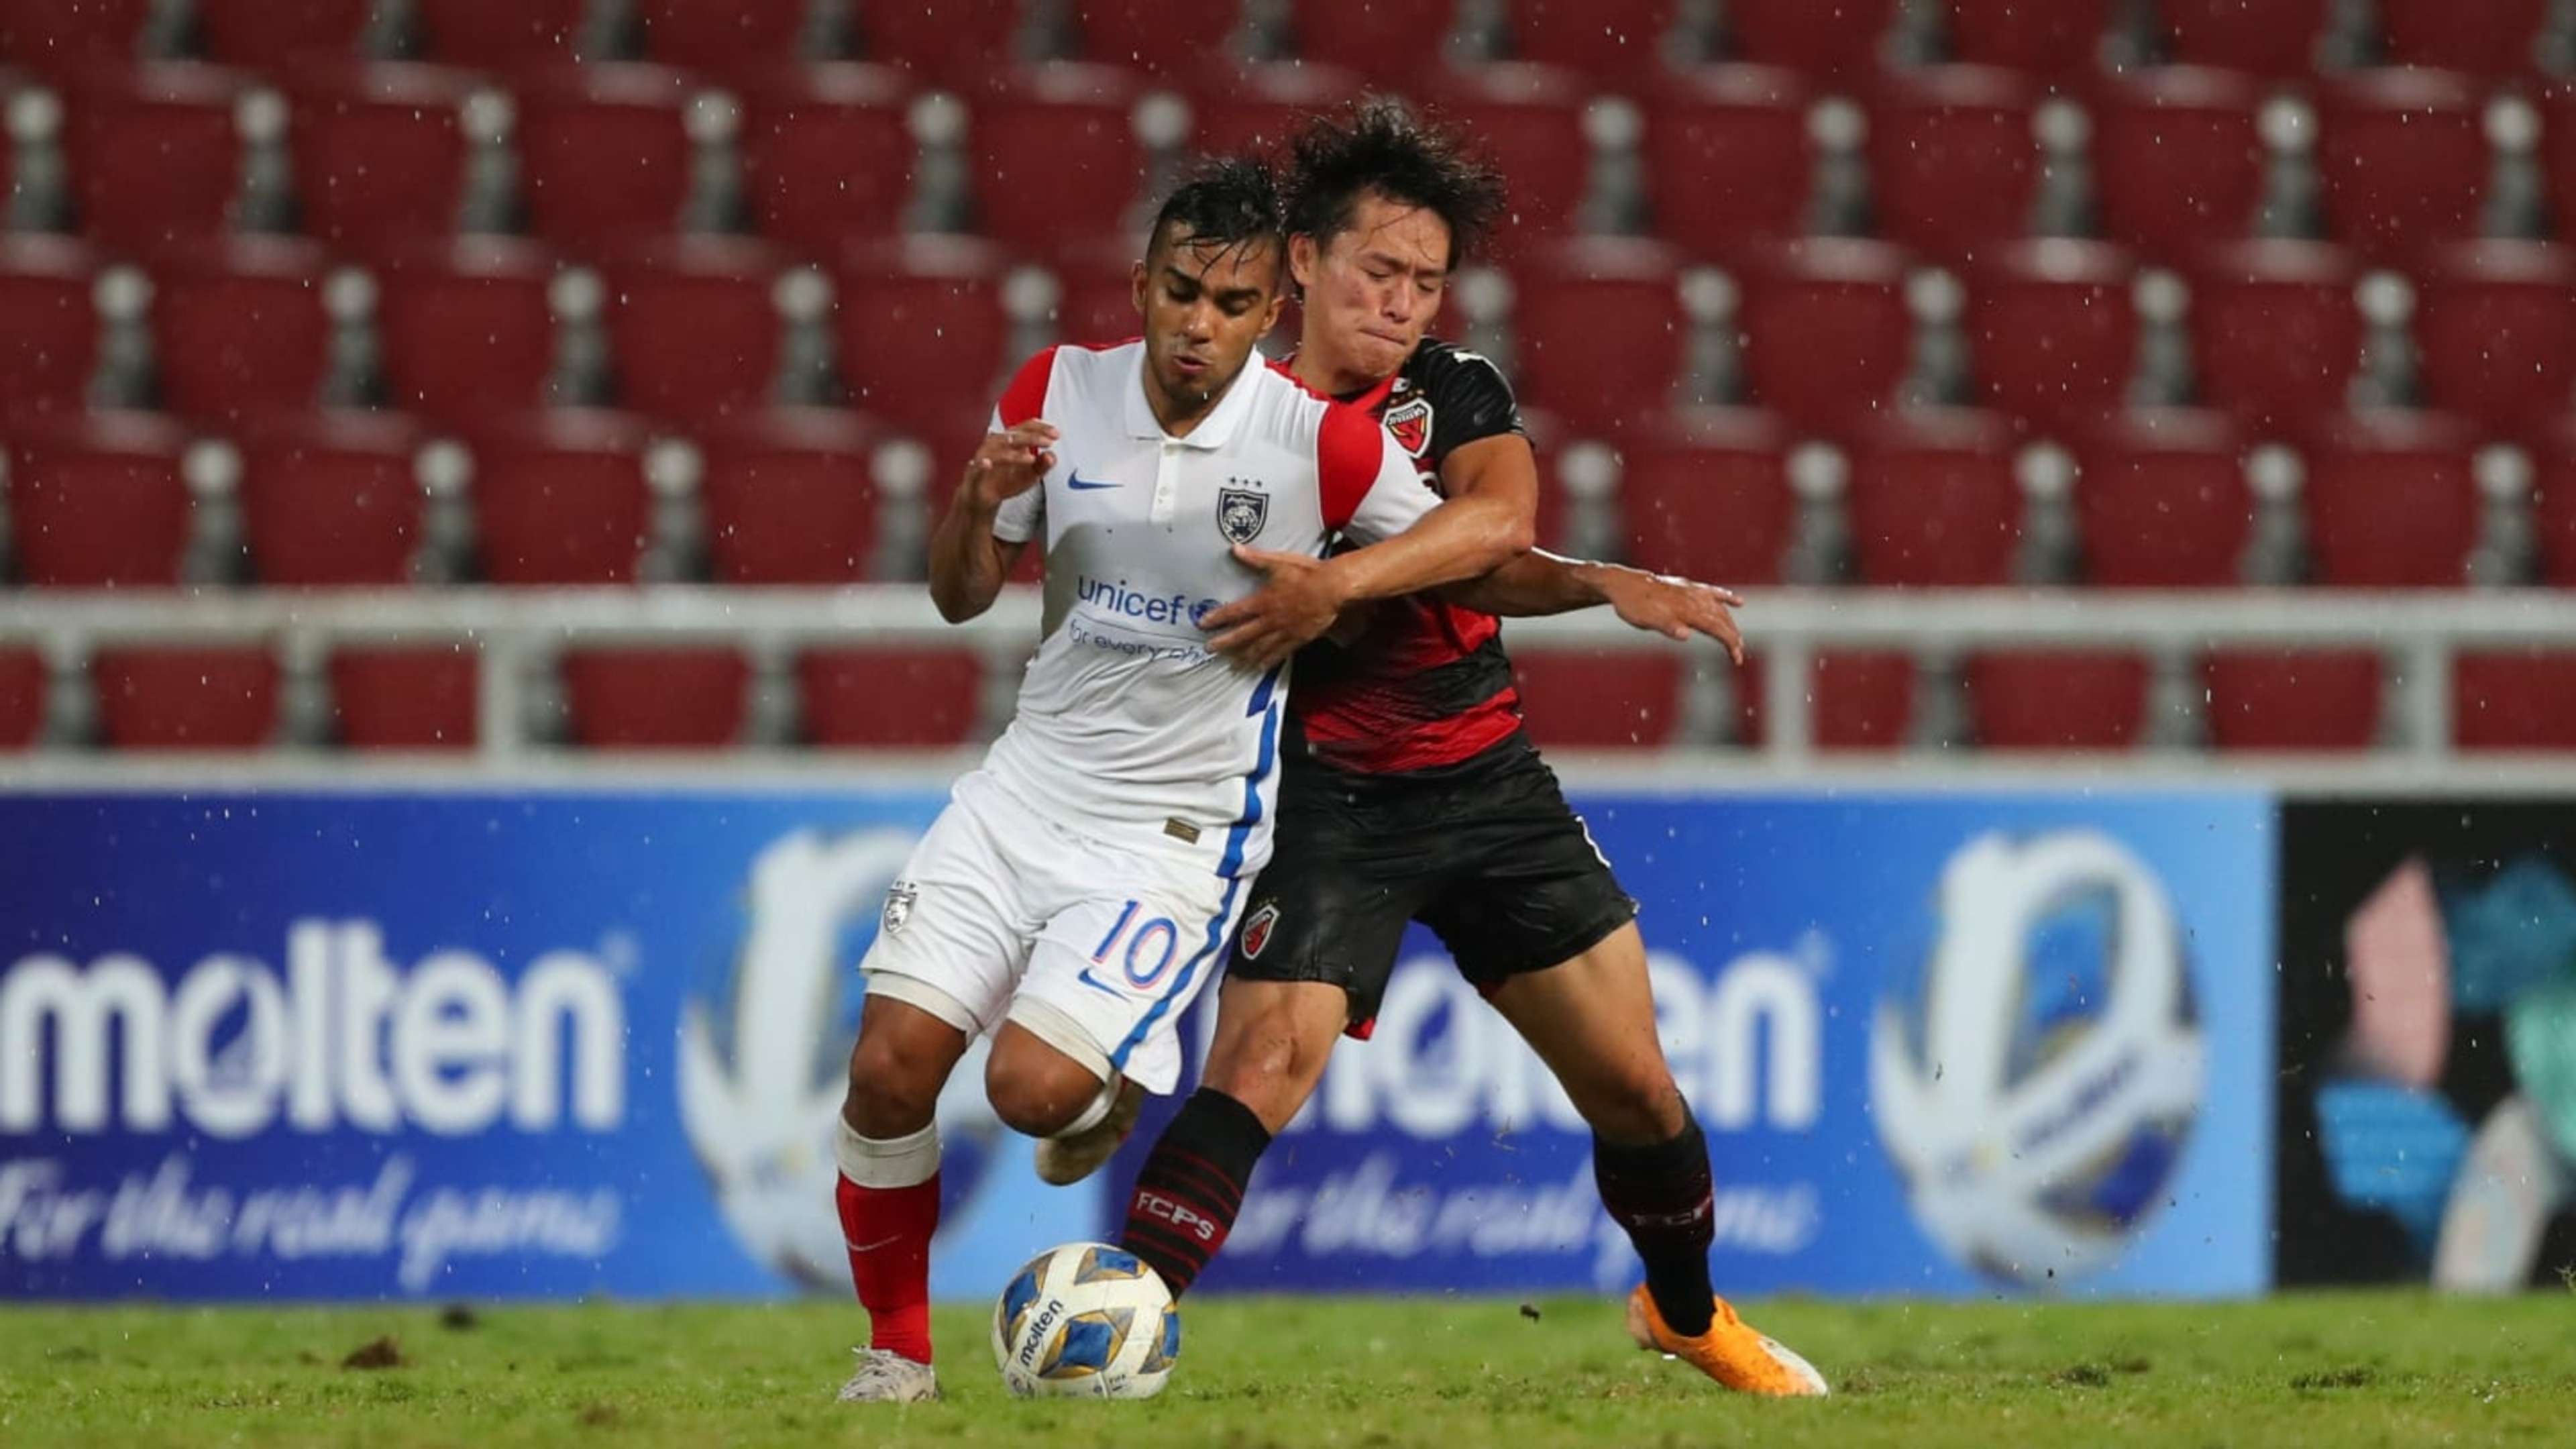 Leandro Velazquez, Pohang v Johor Darul Ta'zim, AFC Champions League, 28 Jun 2021